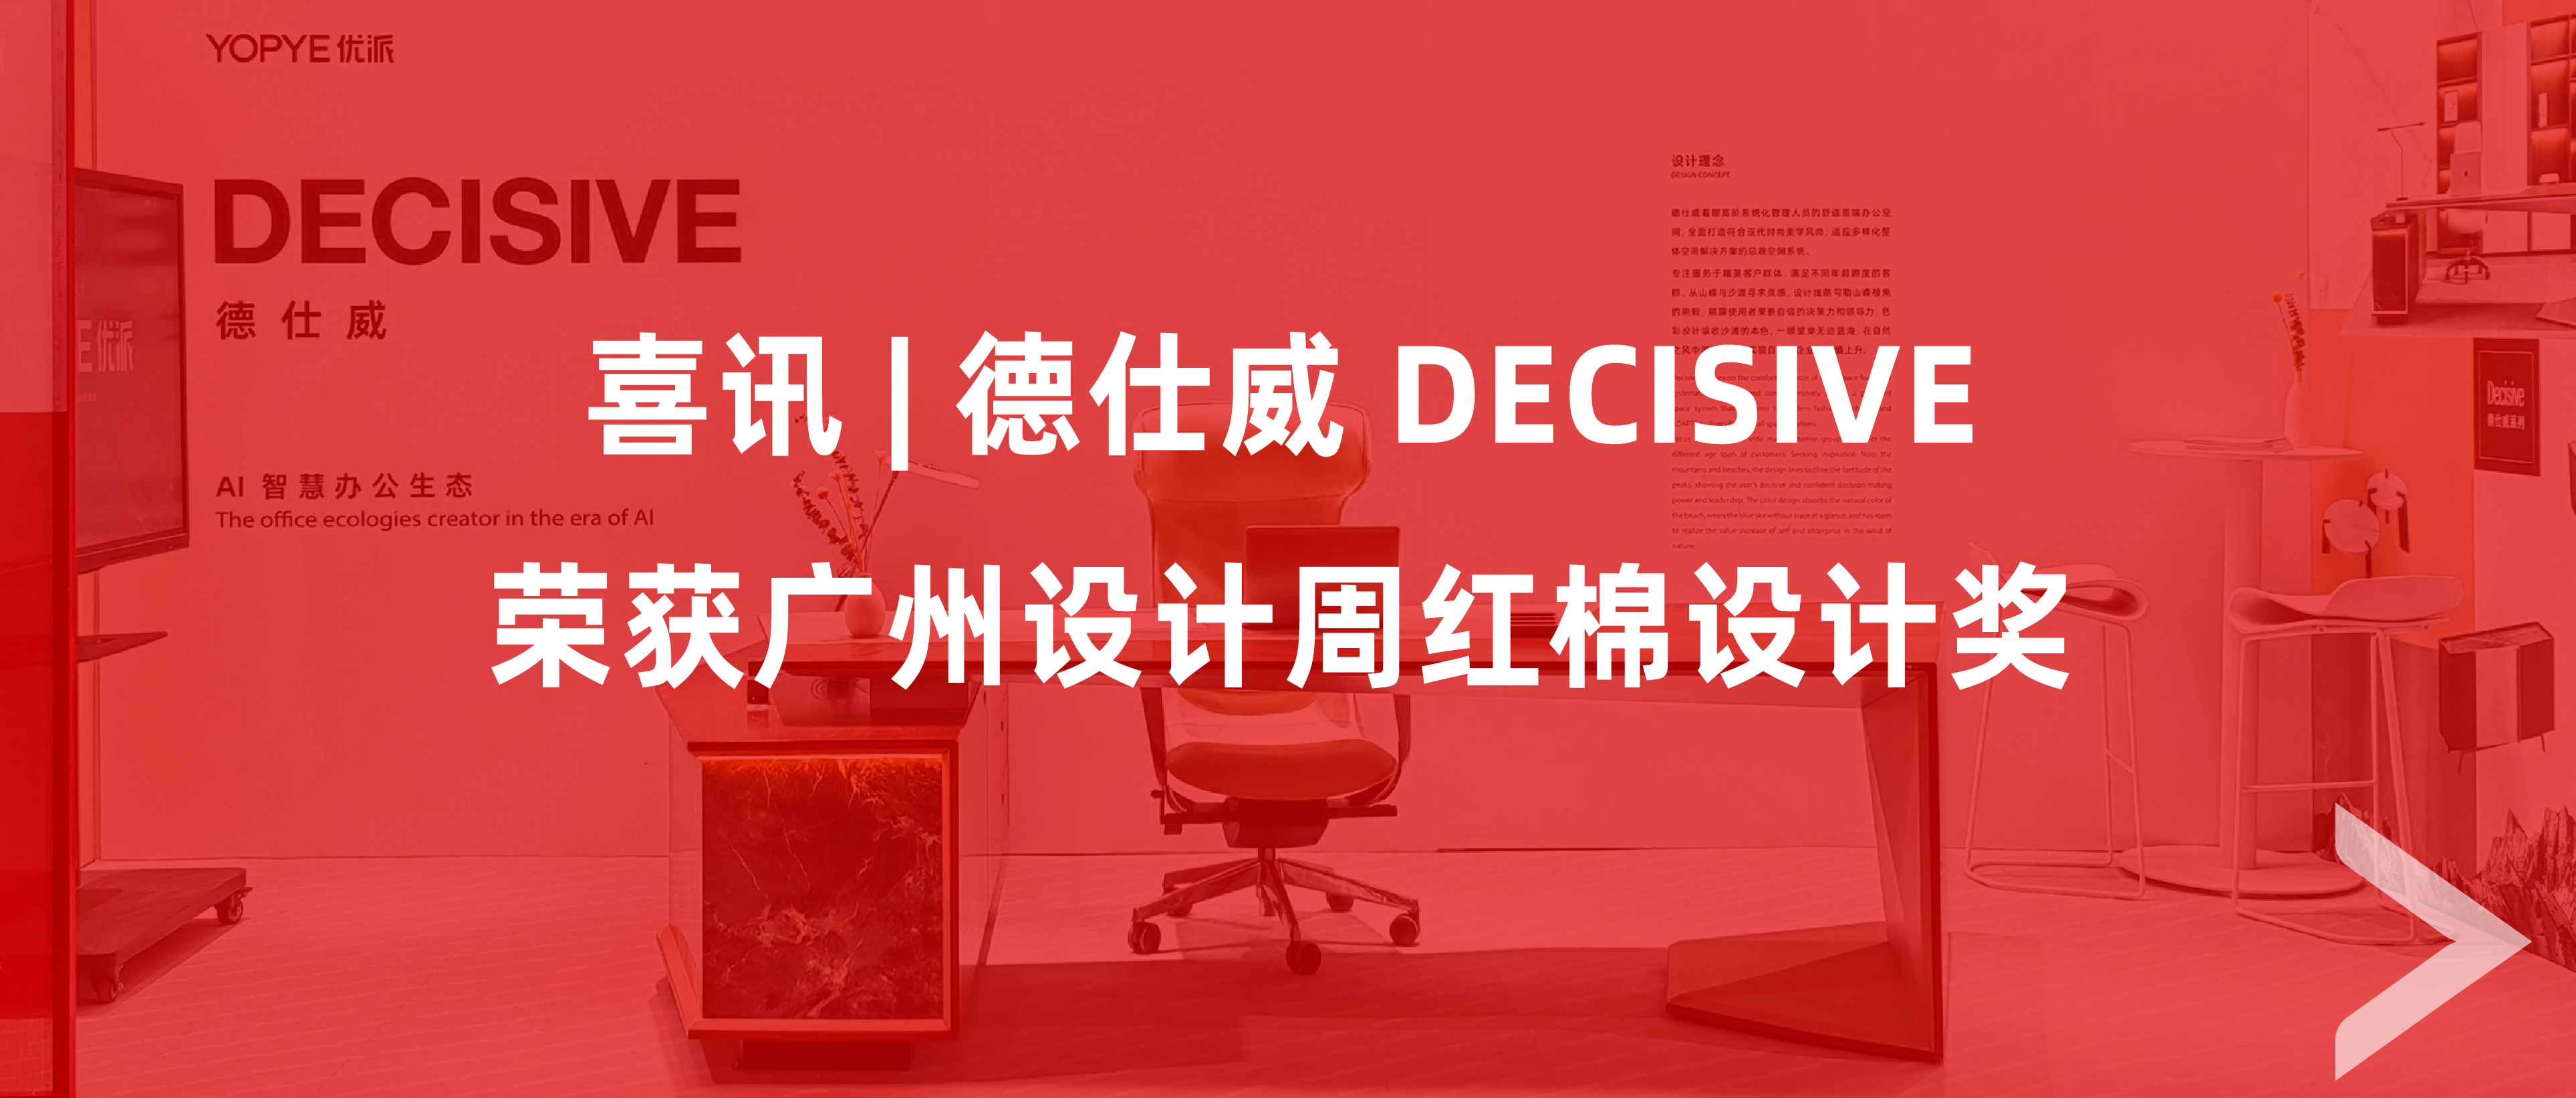 喜讯 | 德仕威 Decisive荣获广州设计周红棉设计奖